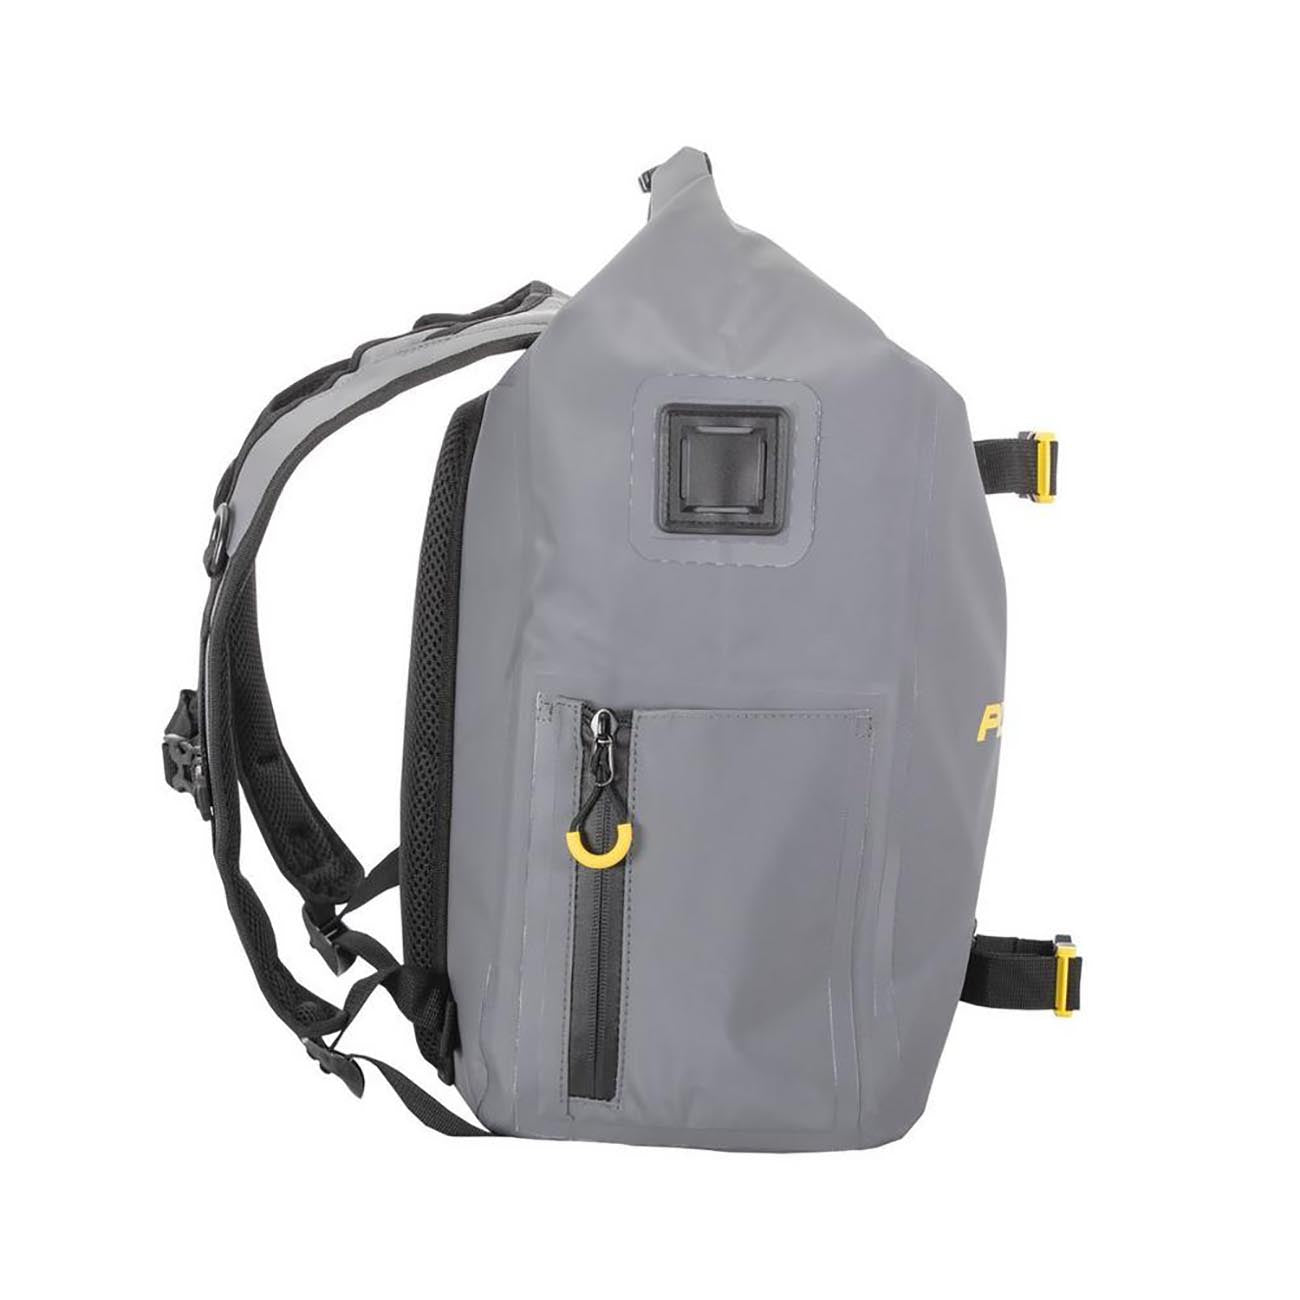 Plano Z-series Waterproof Tackle Backpack